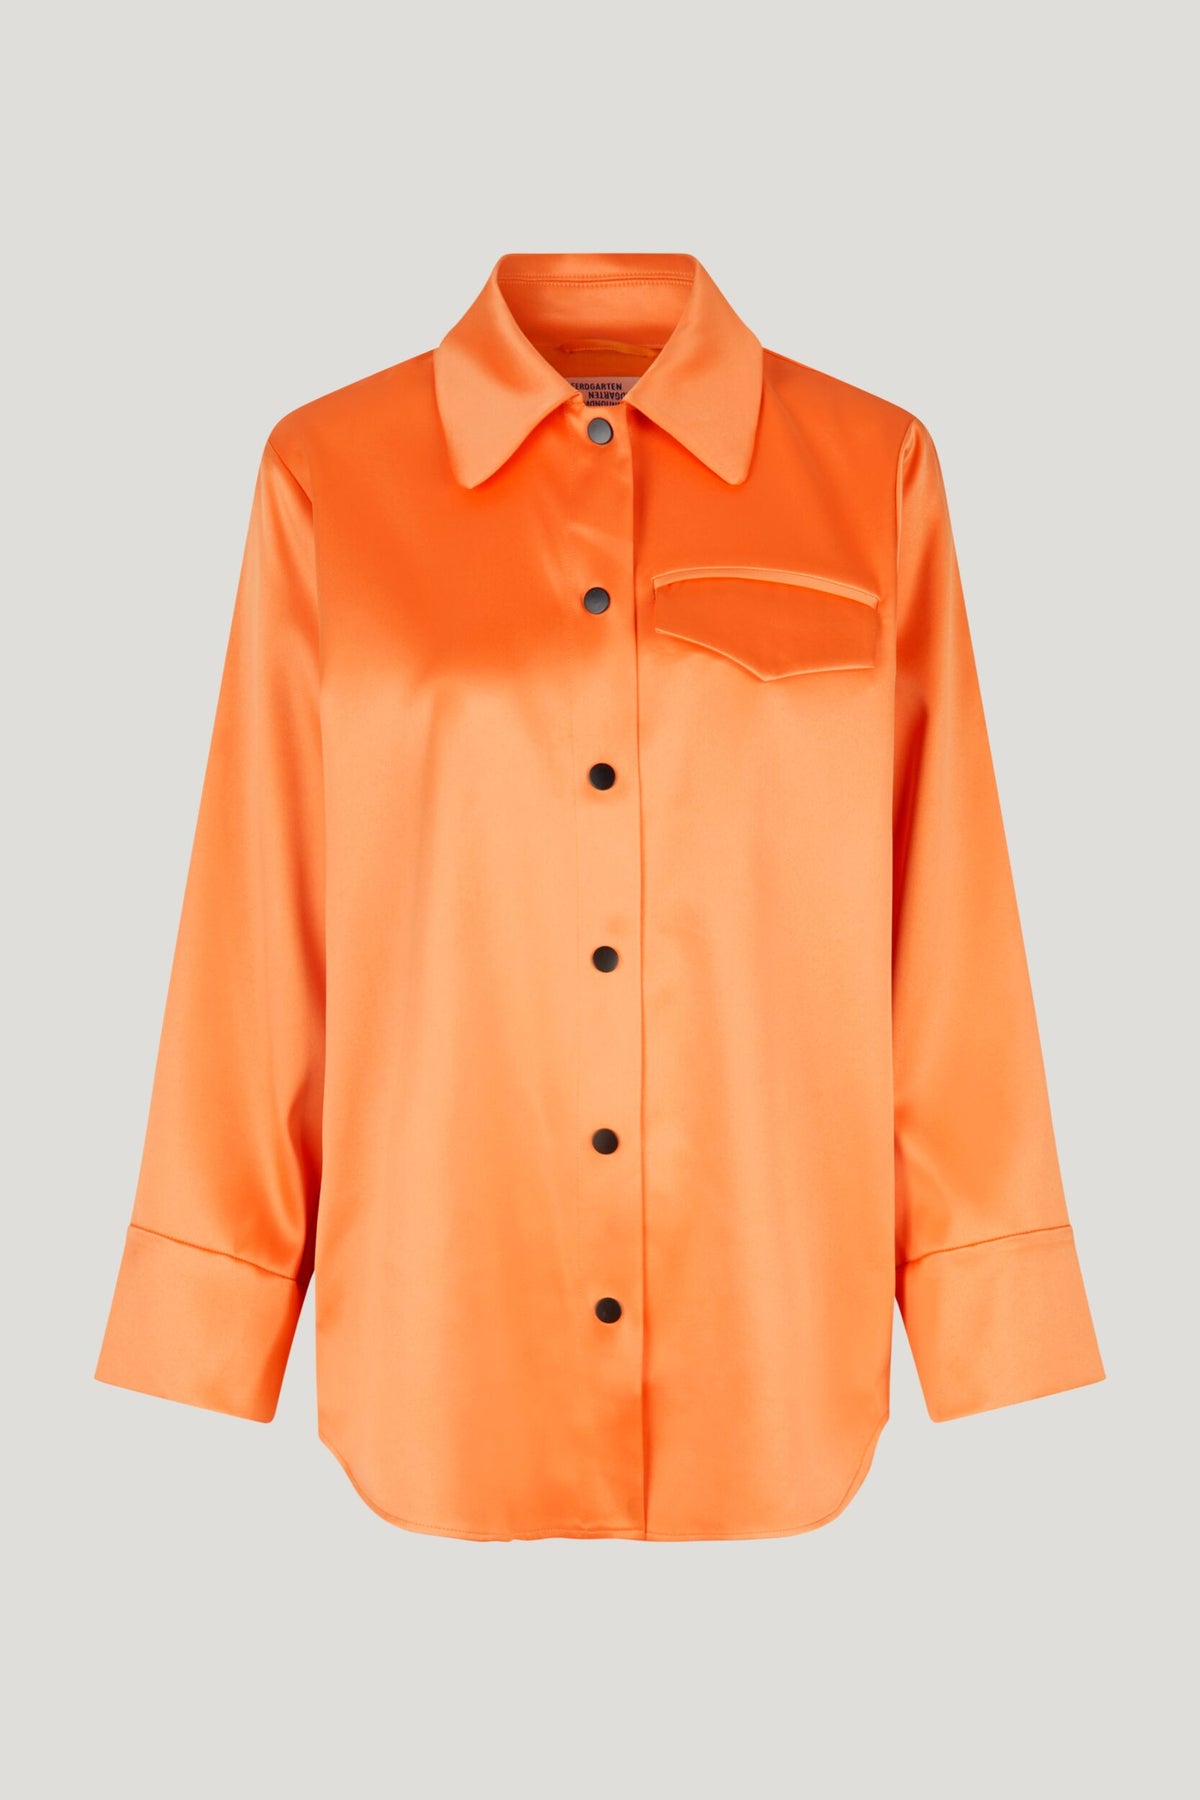 Beryl Jacket Orange